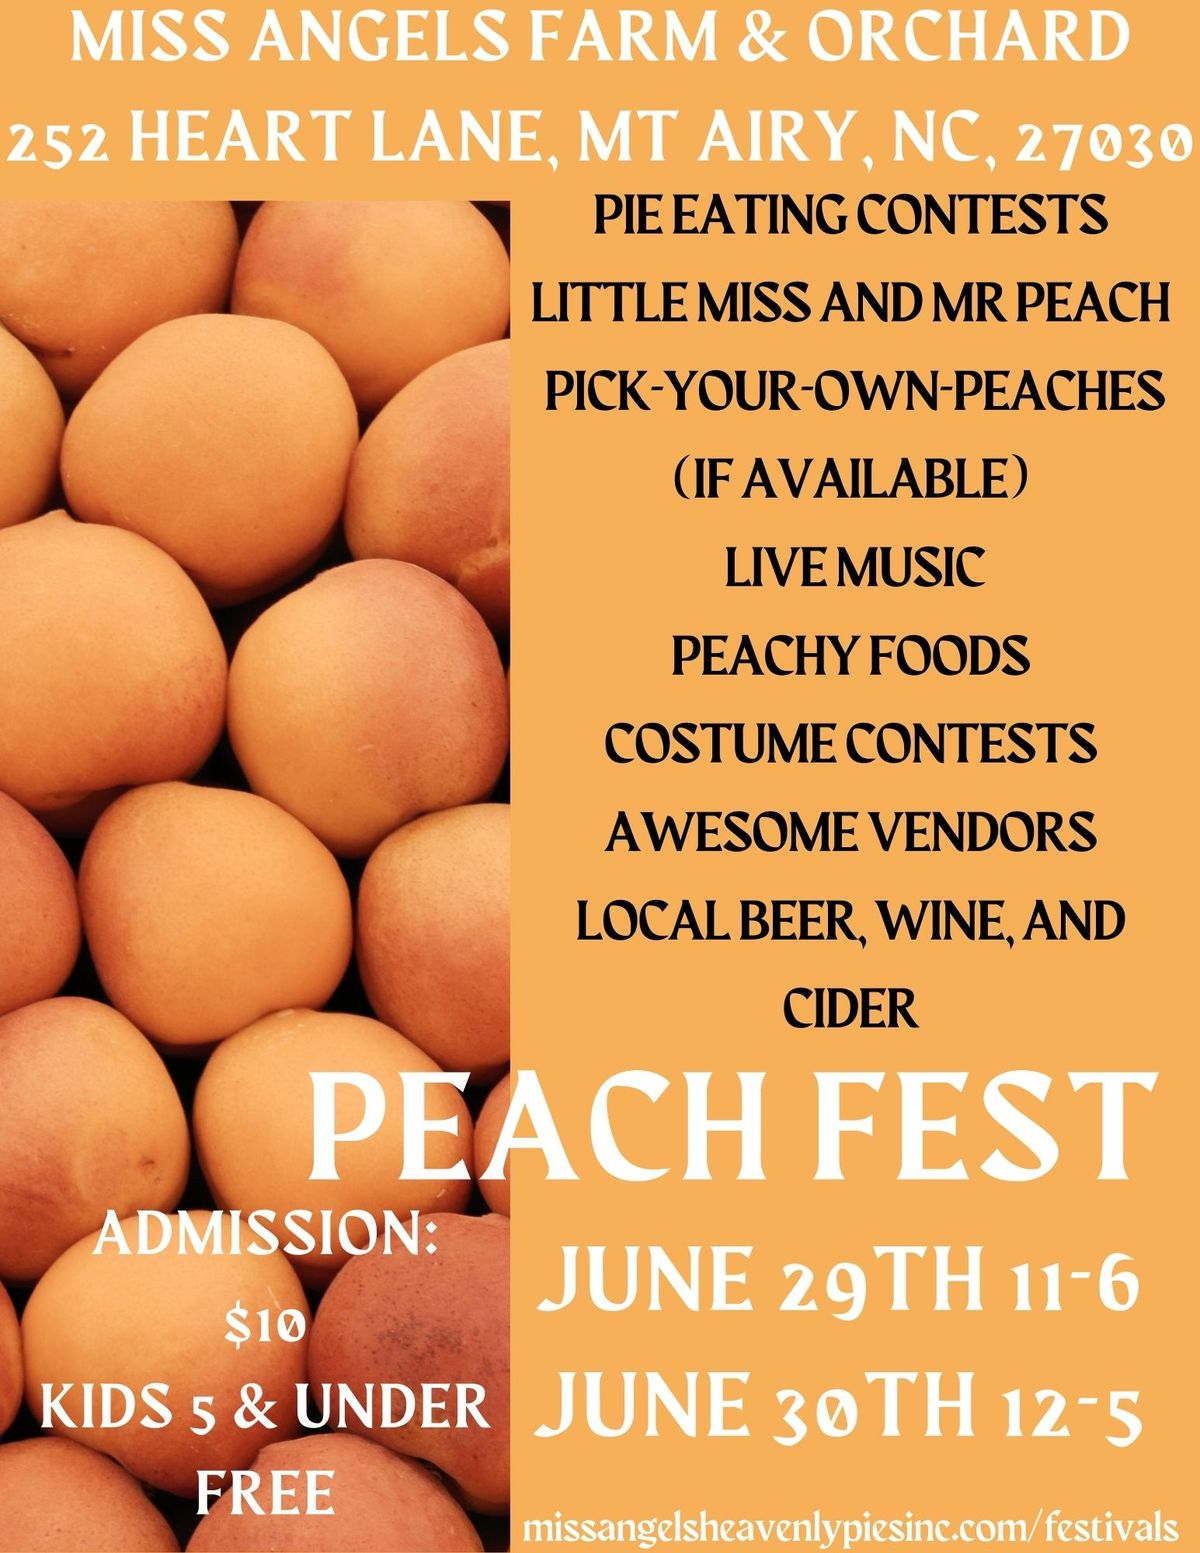 Peach Festival